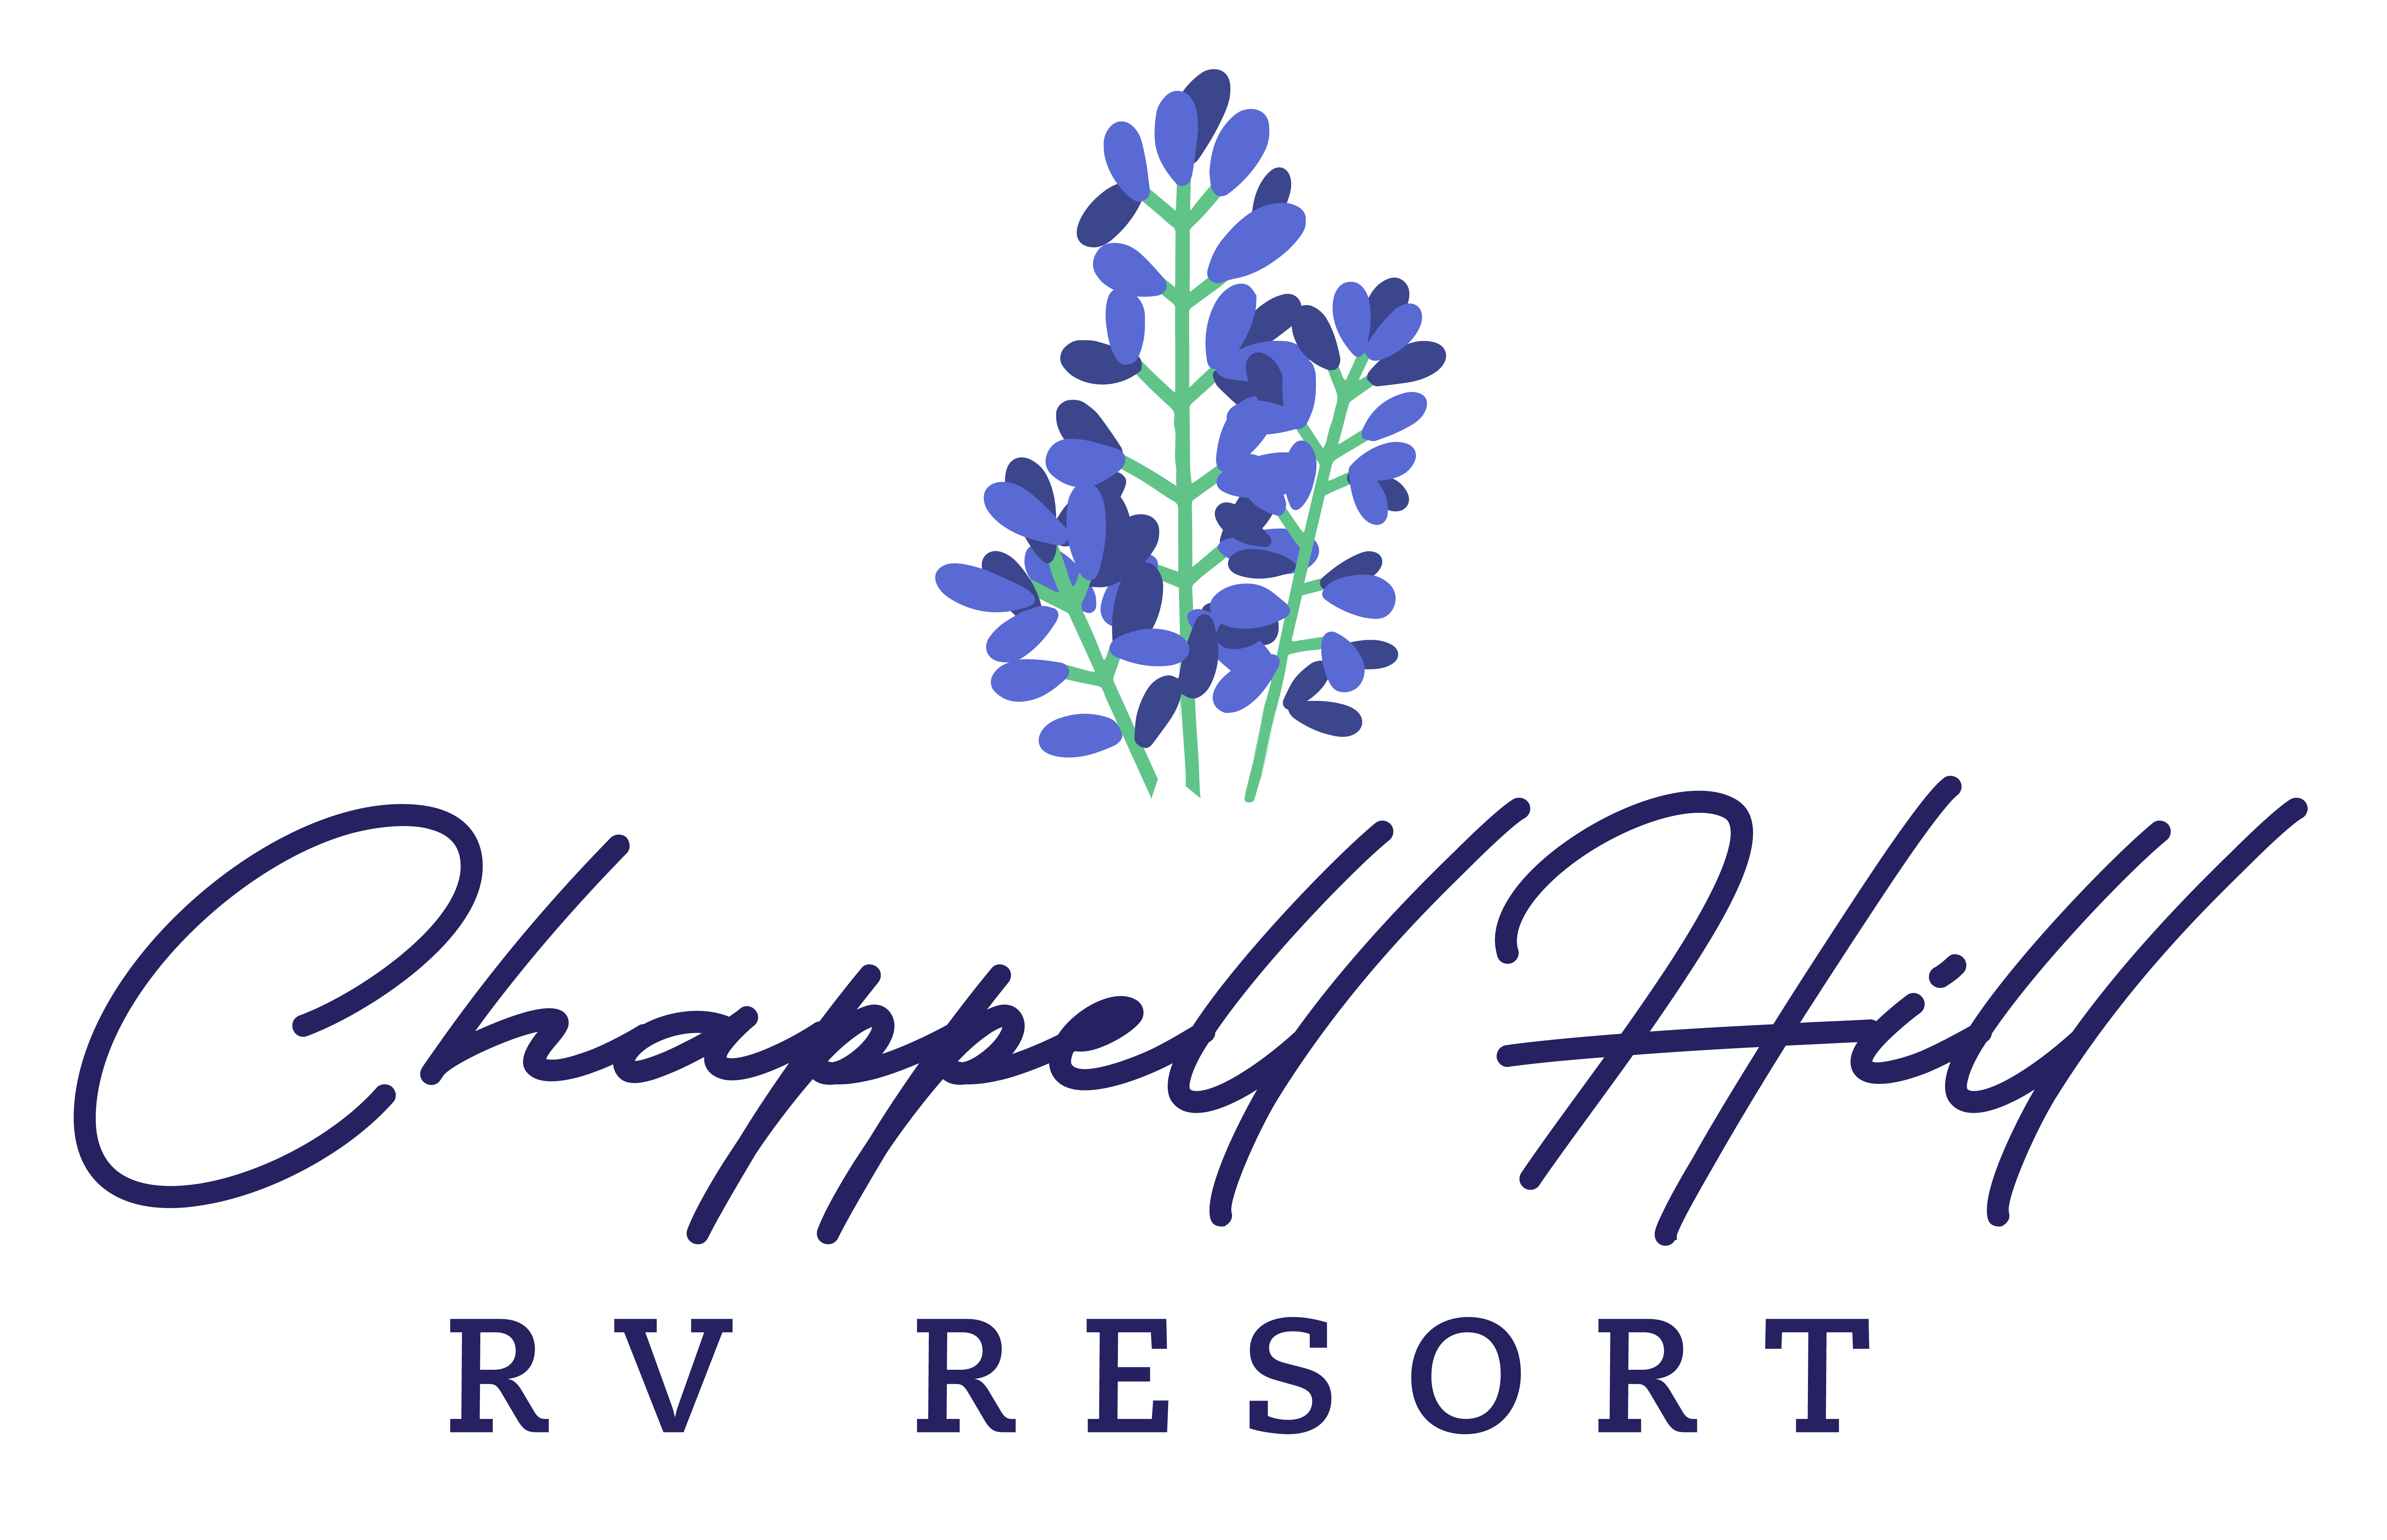 Chappell Hill RV Resort